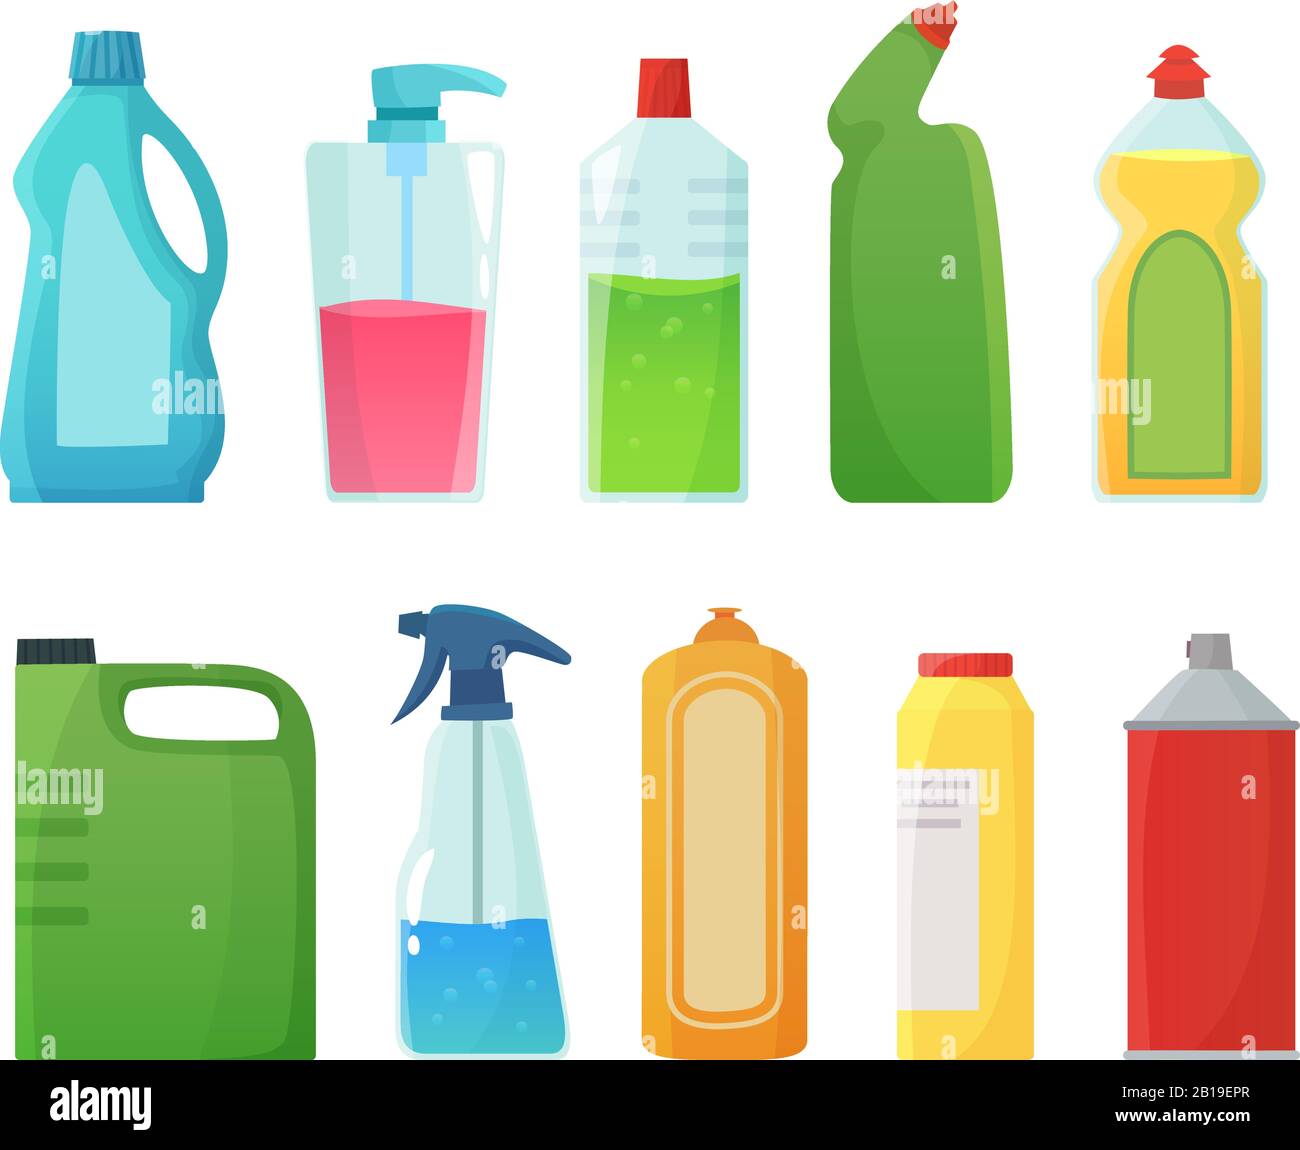 Bottiglie di detergente. Prodotti per la pulizia, bottiglie di candeggina e contenitori di detergenti in plastica Cartoon Vector Illustration Illustrazione Vettoriale